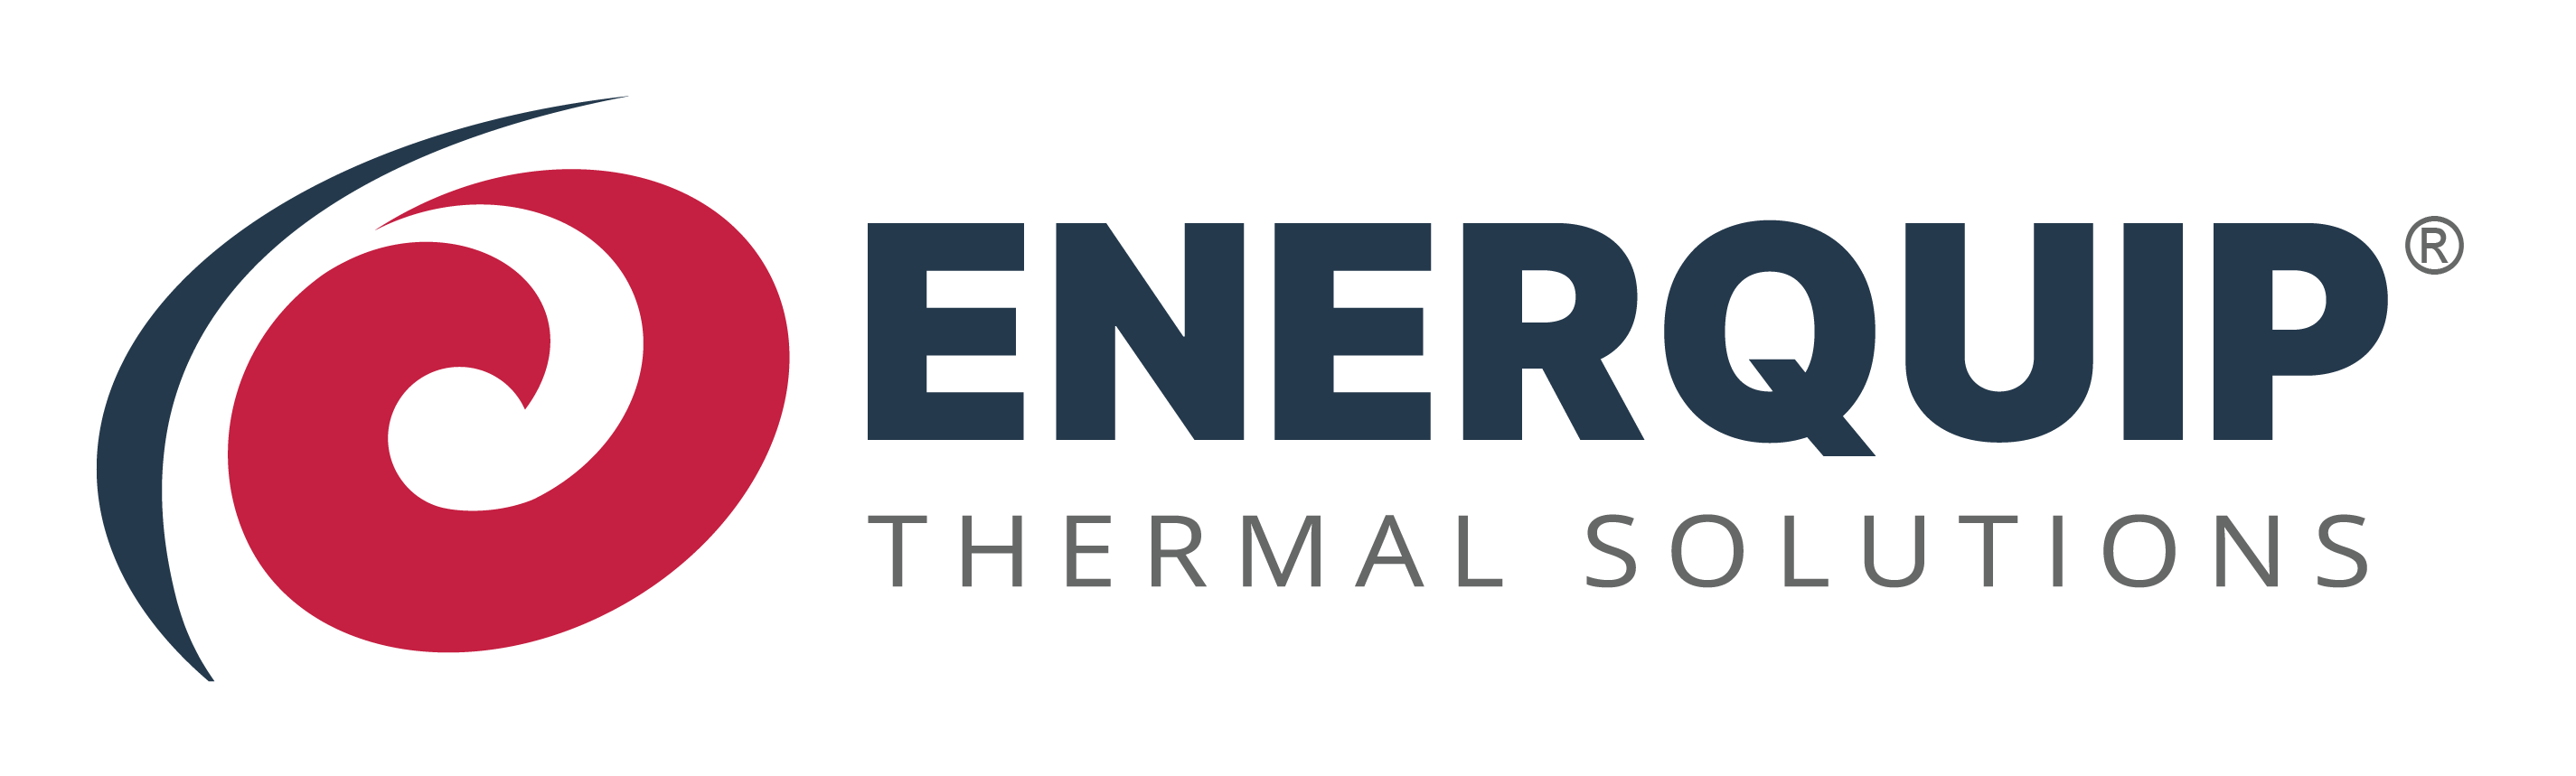 How Do Water Heat Exchangers Work? - Enerquip Thermal Solutions